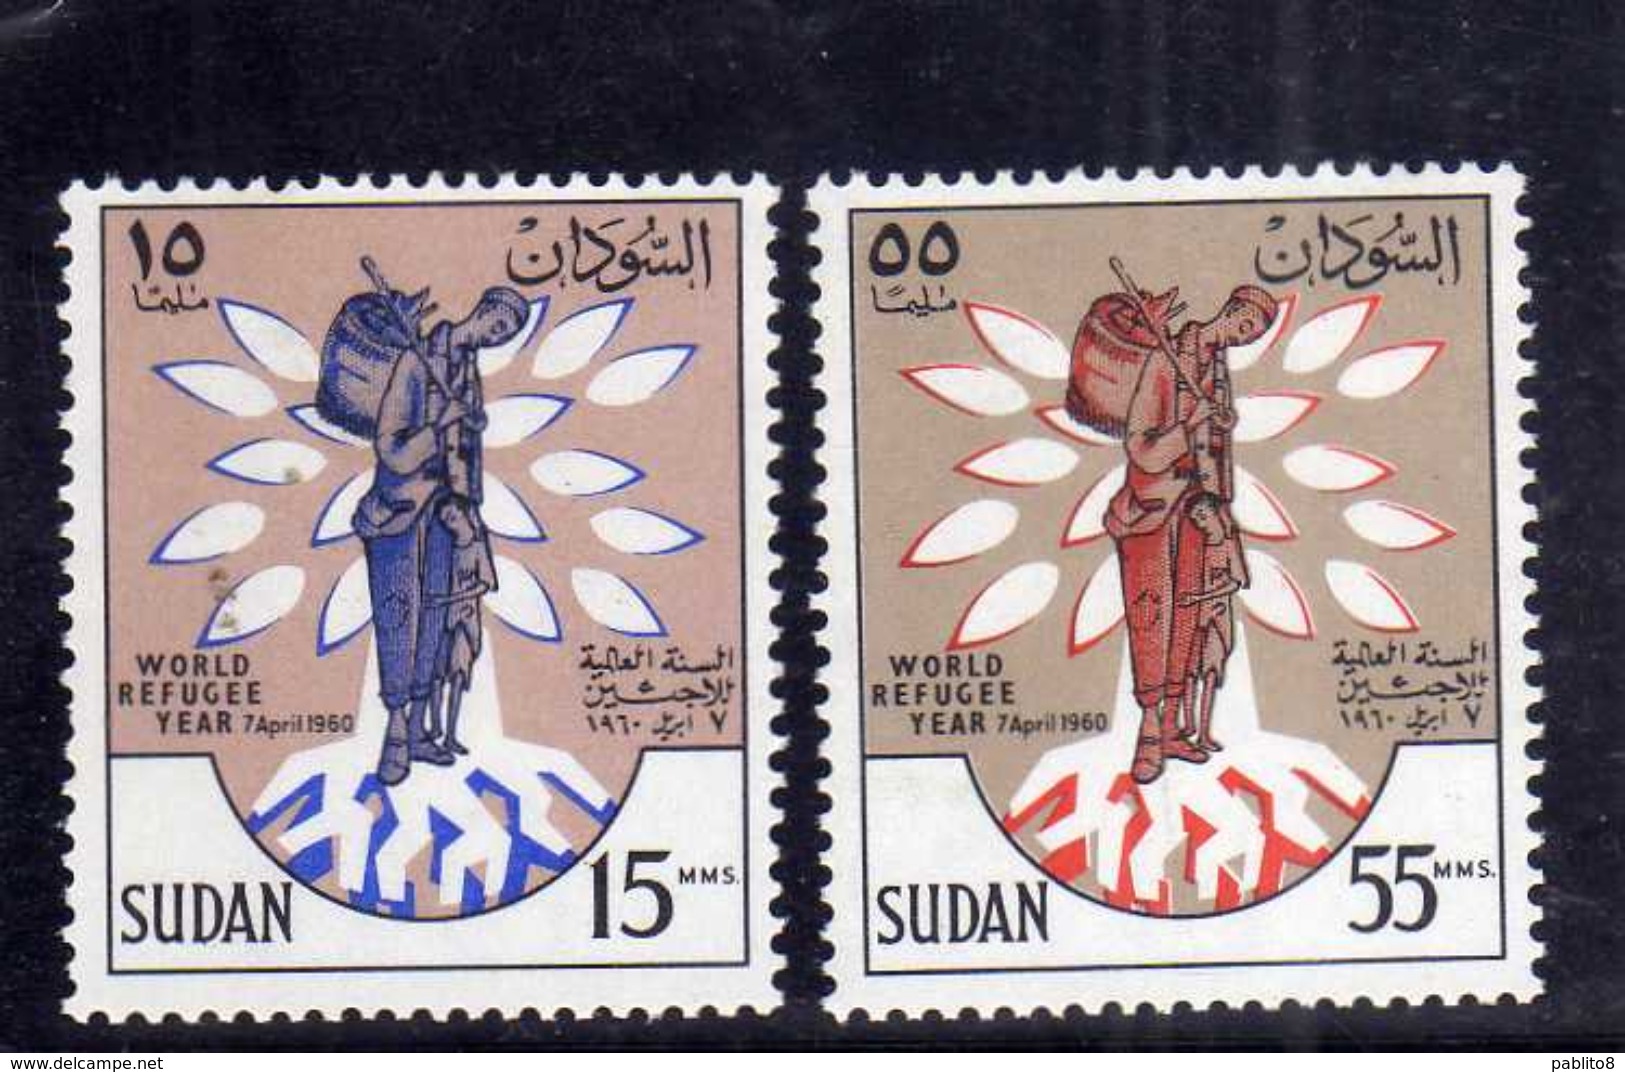 SUDAN SOUDAN 1960 WORLD REFUGEE YEAR ANNO DEL RIFUGIATO SERIE COMPLETA COMPLETE SET MNH - Sudan (1954-...)